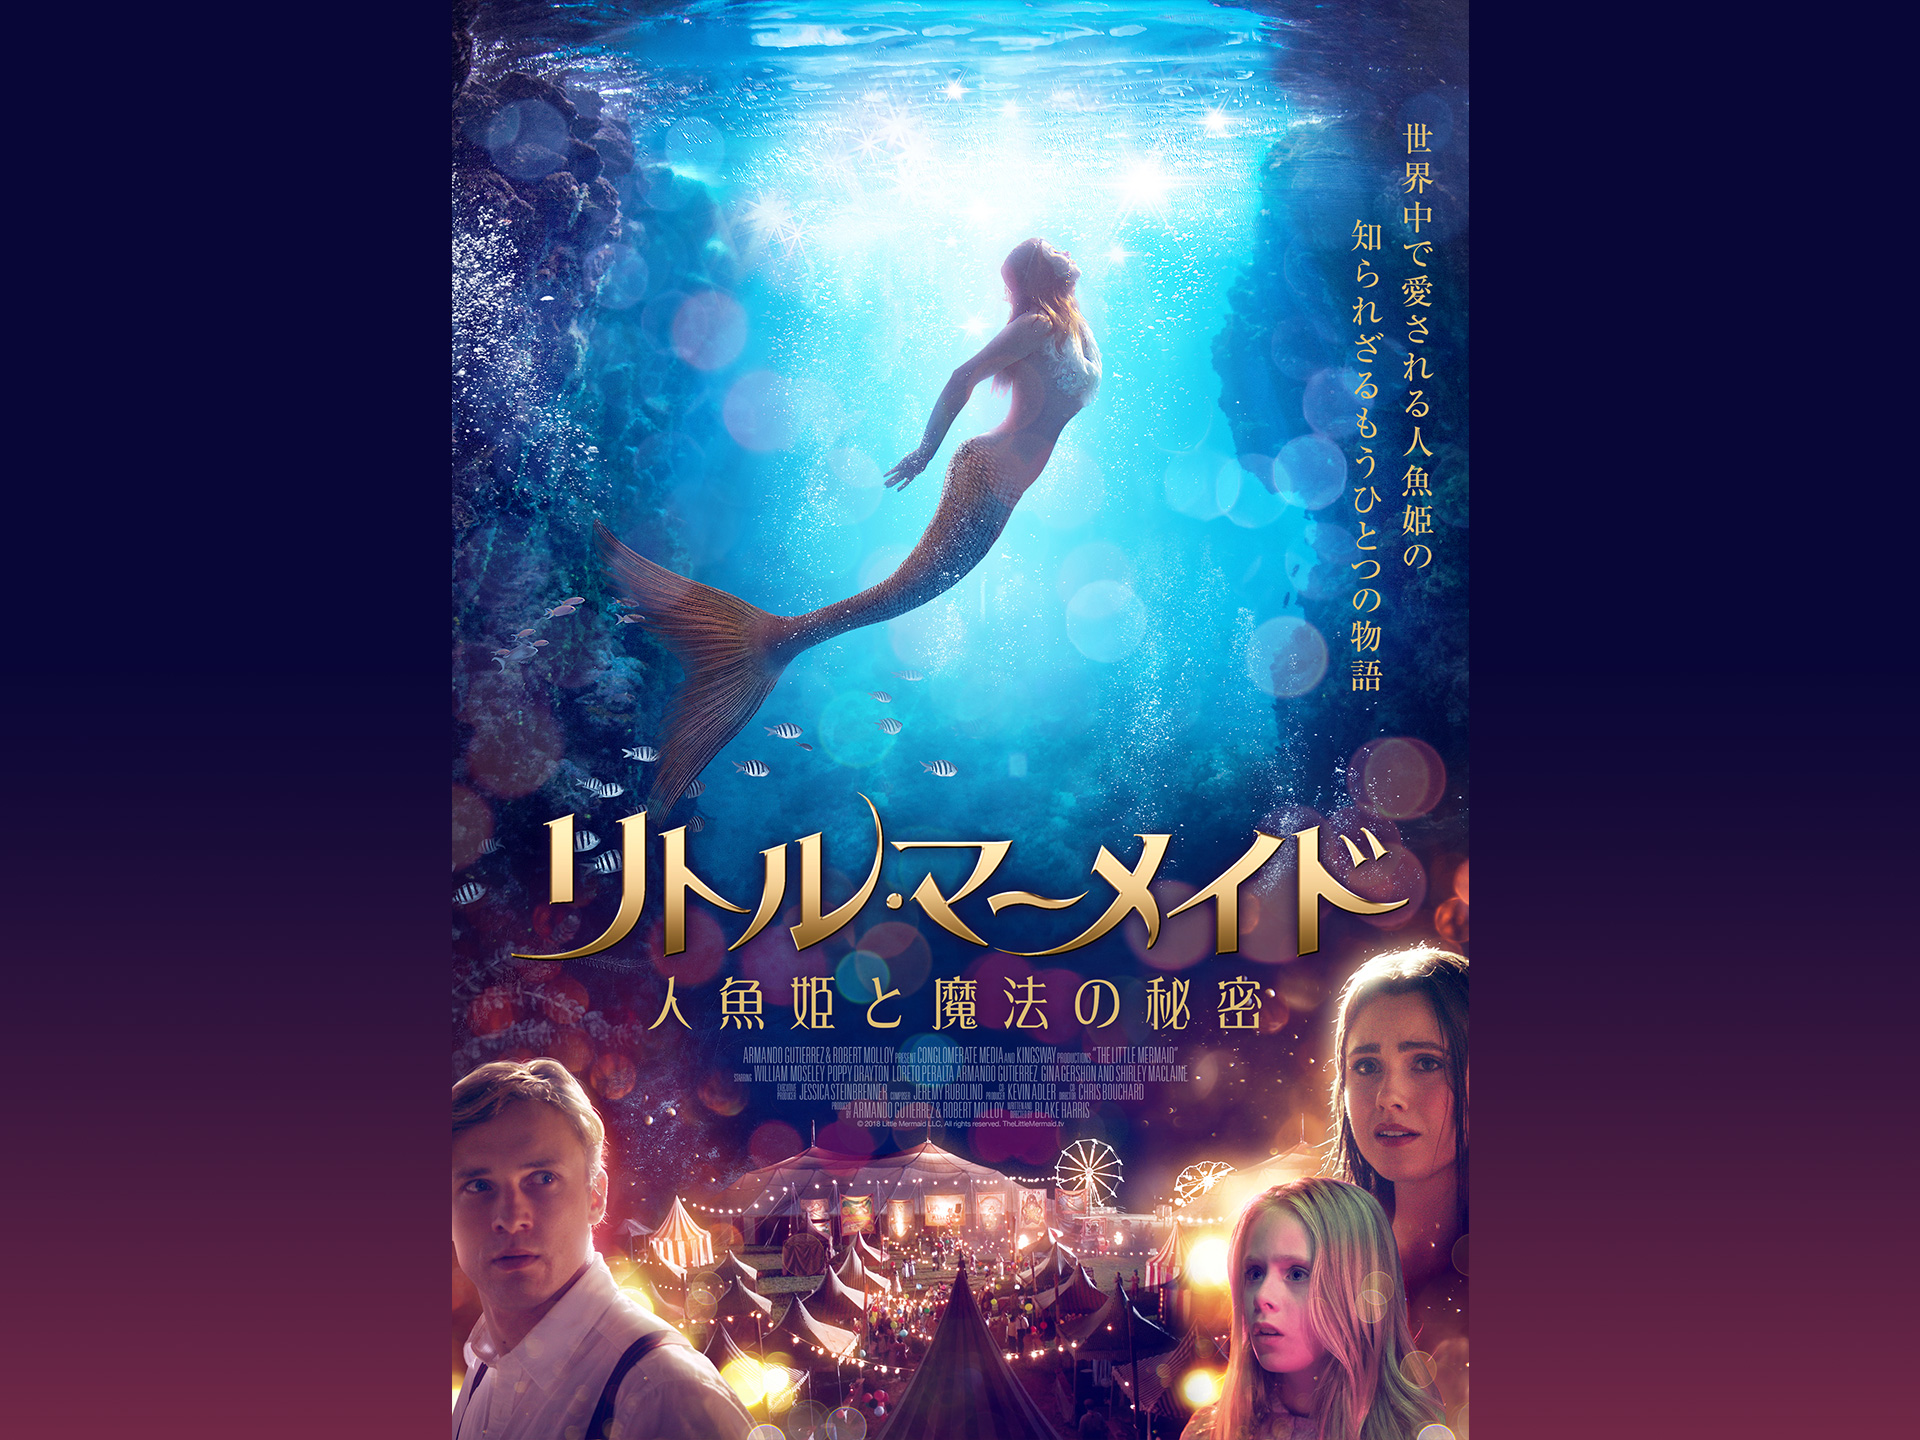 映画 リトル マーメイド 人魚姫と魔法の秘密 予告編 フル動画 初月無料 動画配信サービスのビデオマーケット